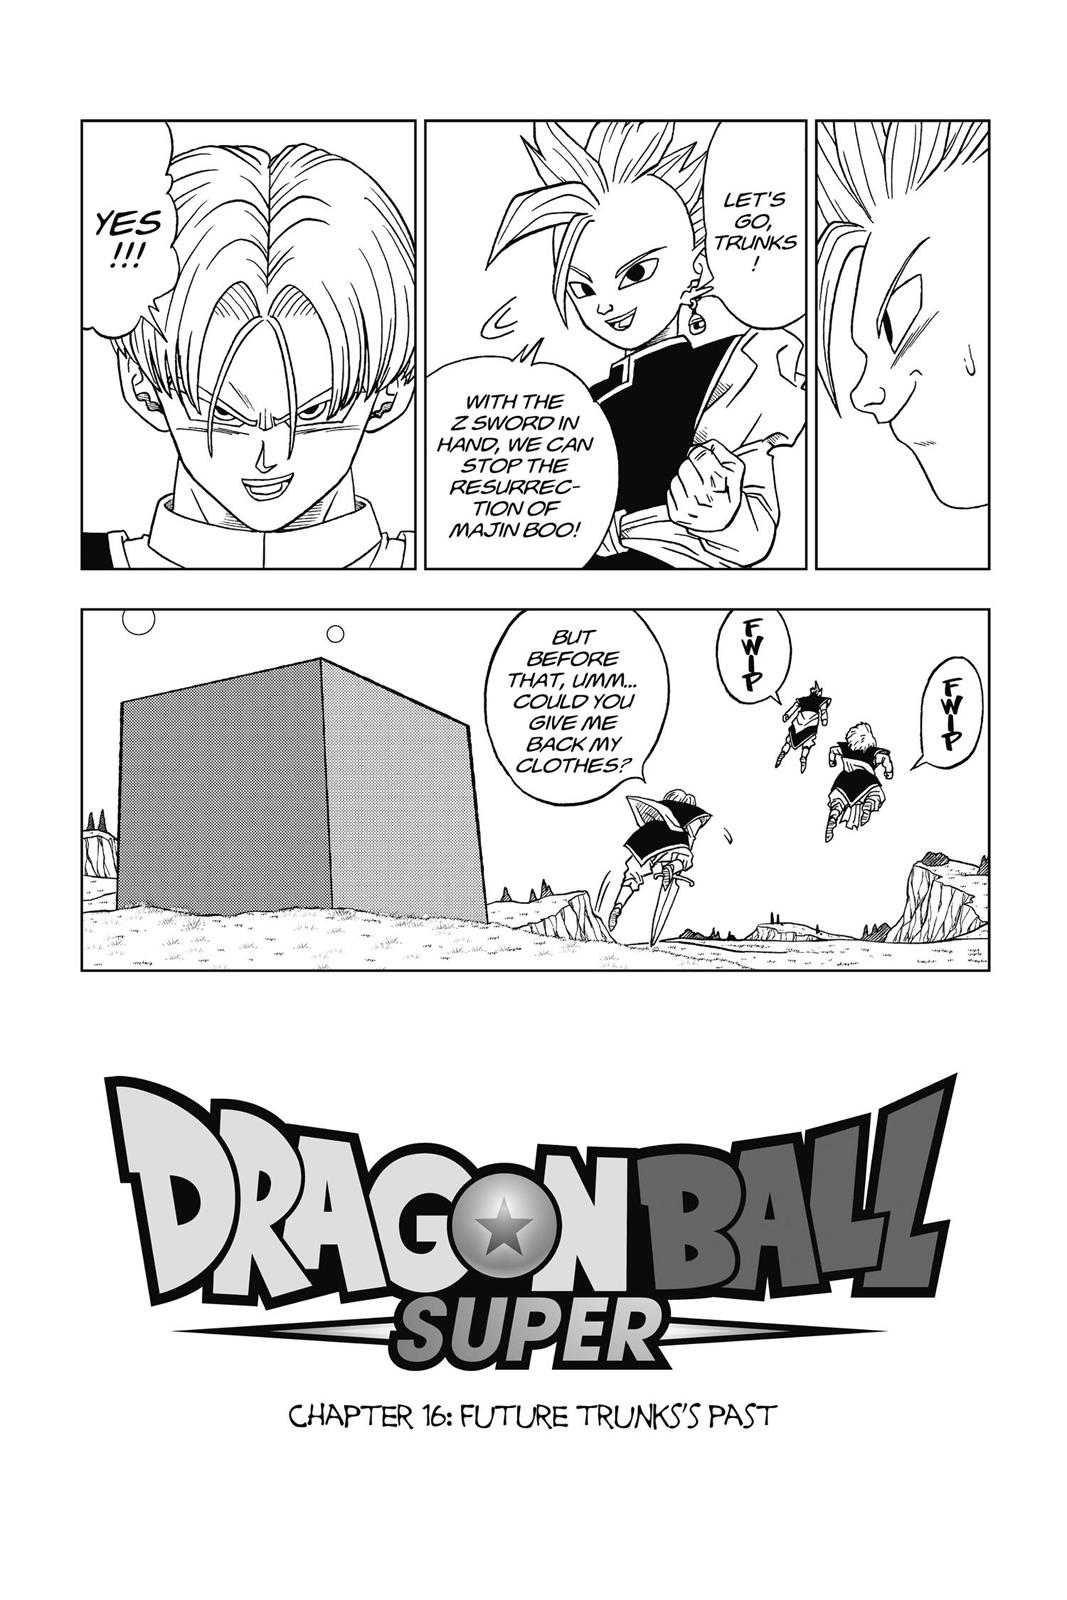 Trunks  Dragon ball super manga, Anime dragon ball goku, Dragon ball z